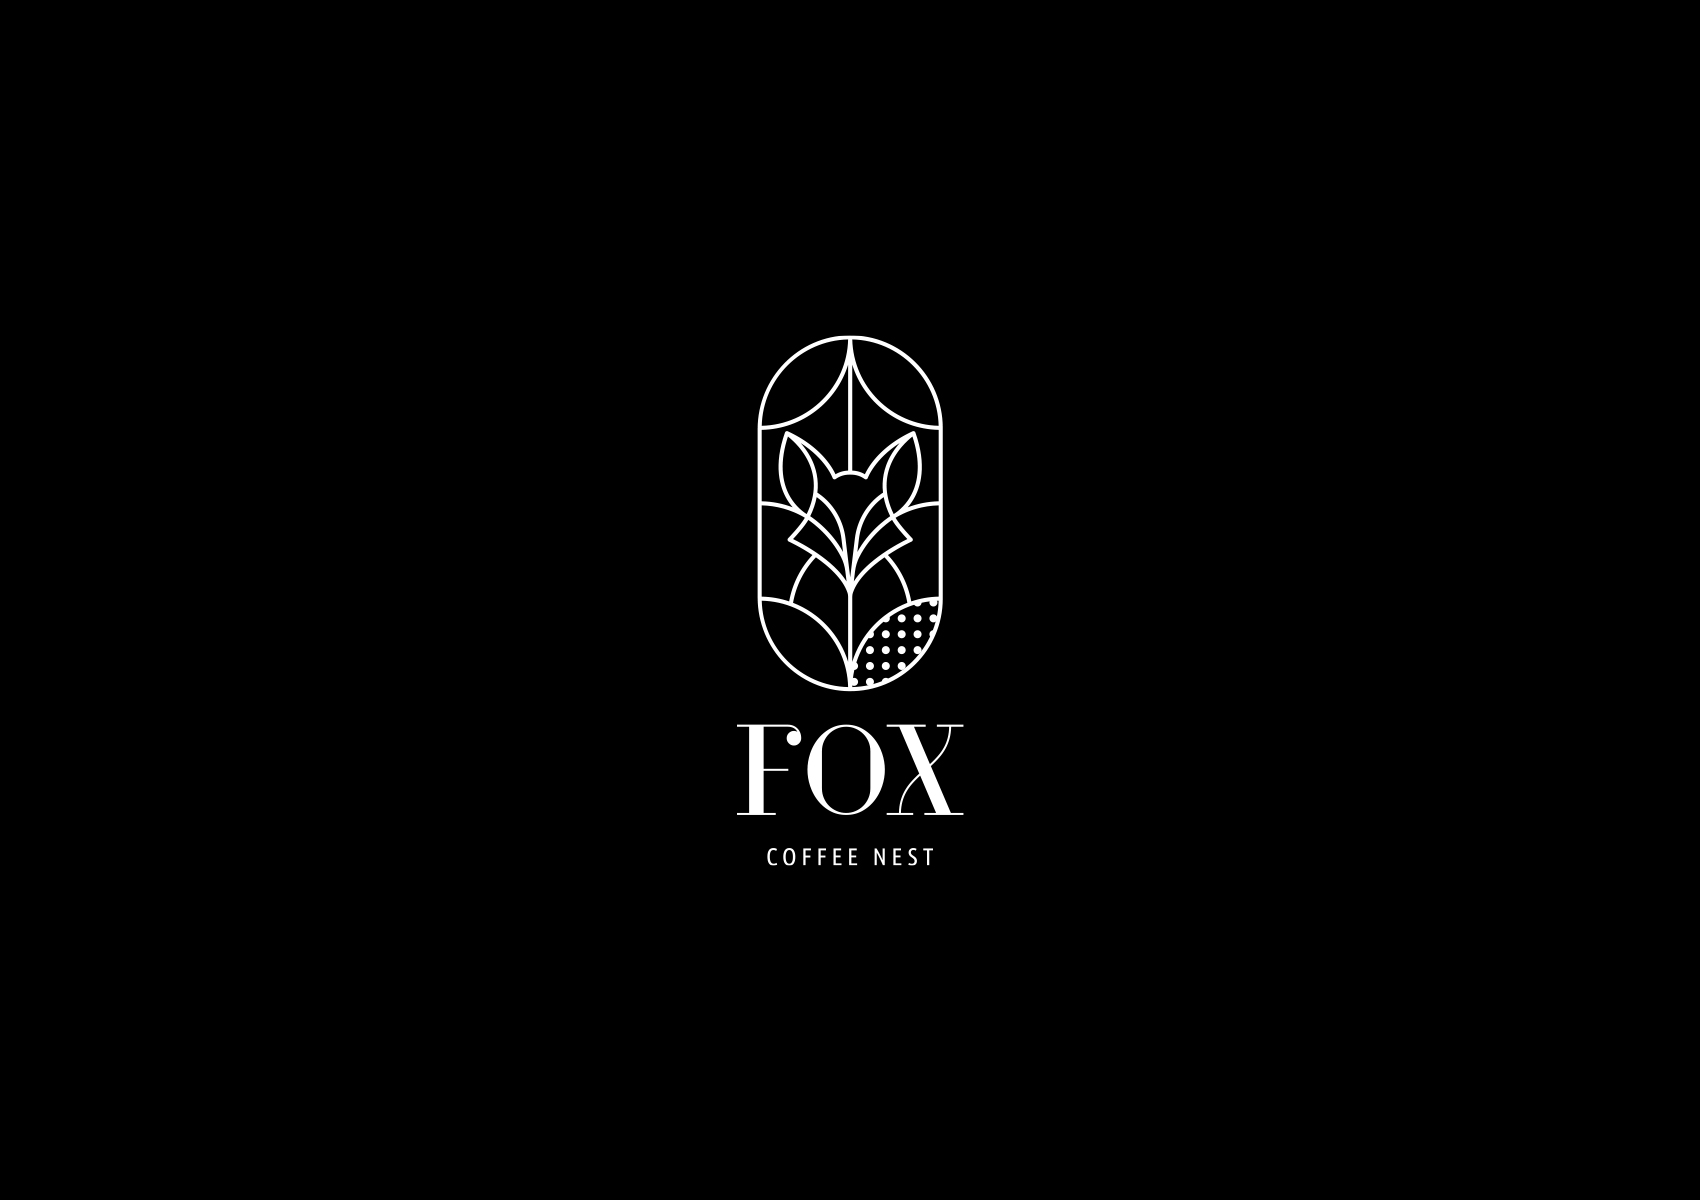 Fox coffee nest logo BW reversed 1700x1200 by xhristakis